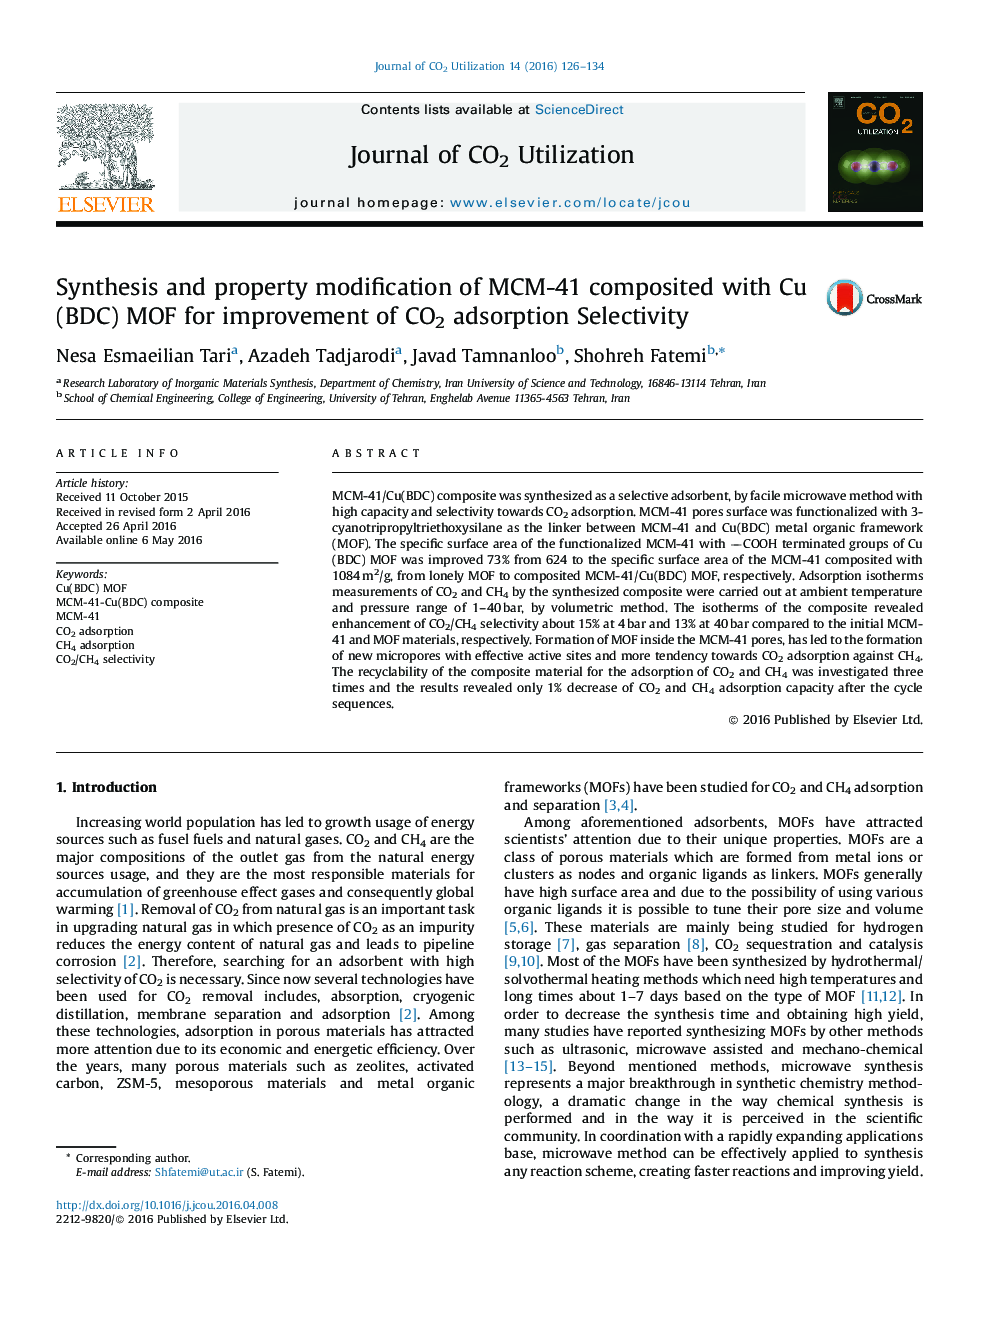 سنتز و اصلاح ویژگی MCM-41 ترکیب شده با مس (BDC) MOF برای بهبود انتخابی جذب CO2 